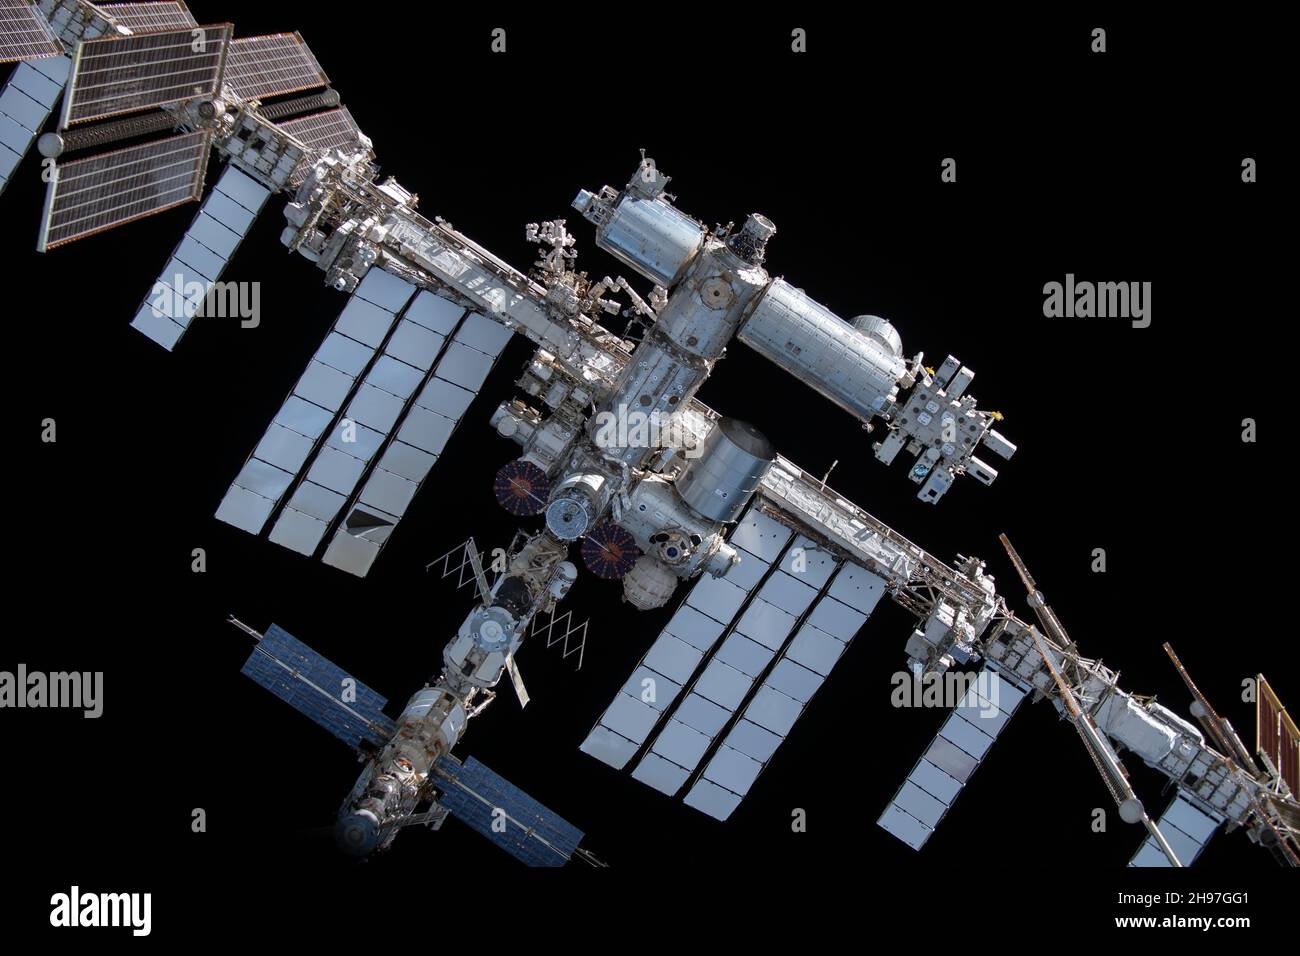 AN BORD DER BESATZUNG DRAGON ENDEAVOUR, ERDE - 08. November 2021 - die Internationale Raumstation ist von der SpaceX Crew Dragon Endeavour während eines Flugs abgebildet Stockfoto